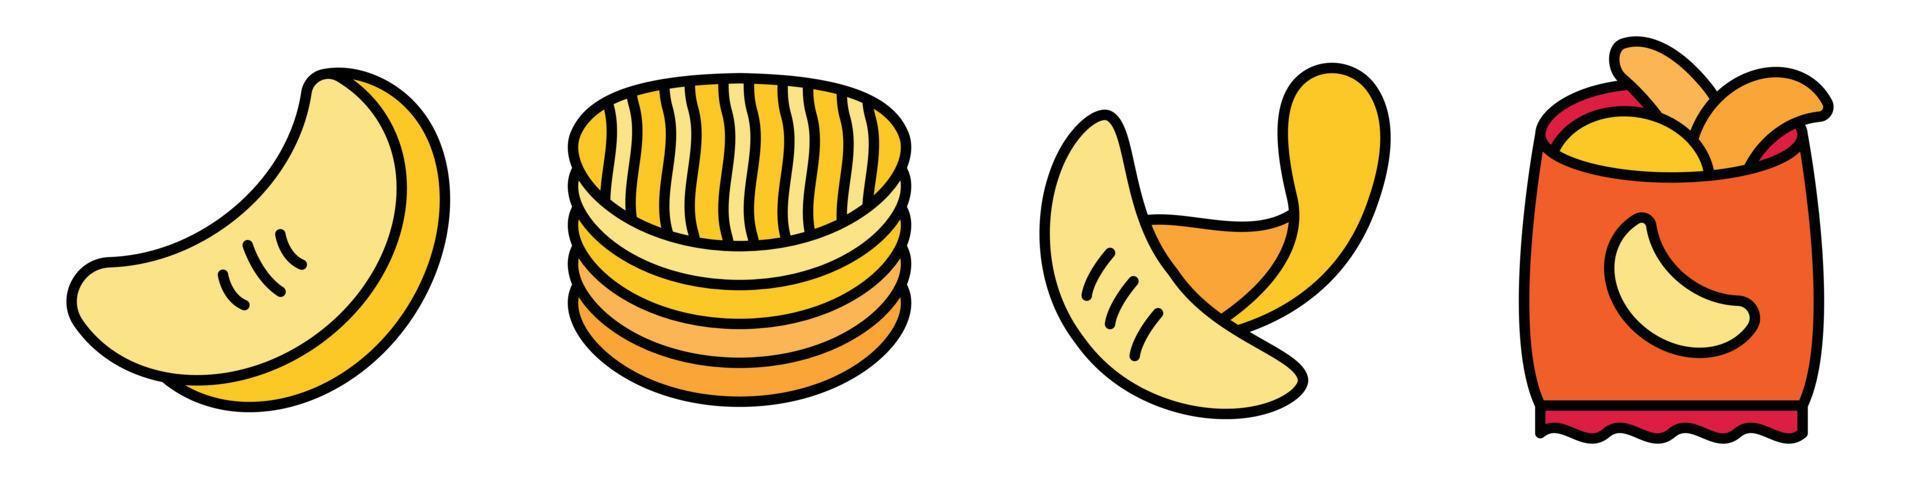 Pommes-Kartoffel-Symbole setzen Linienfarbvektor vektor